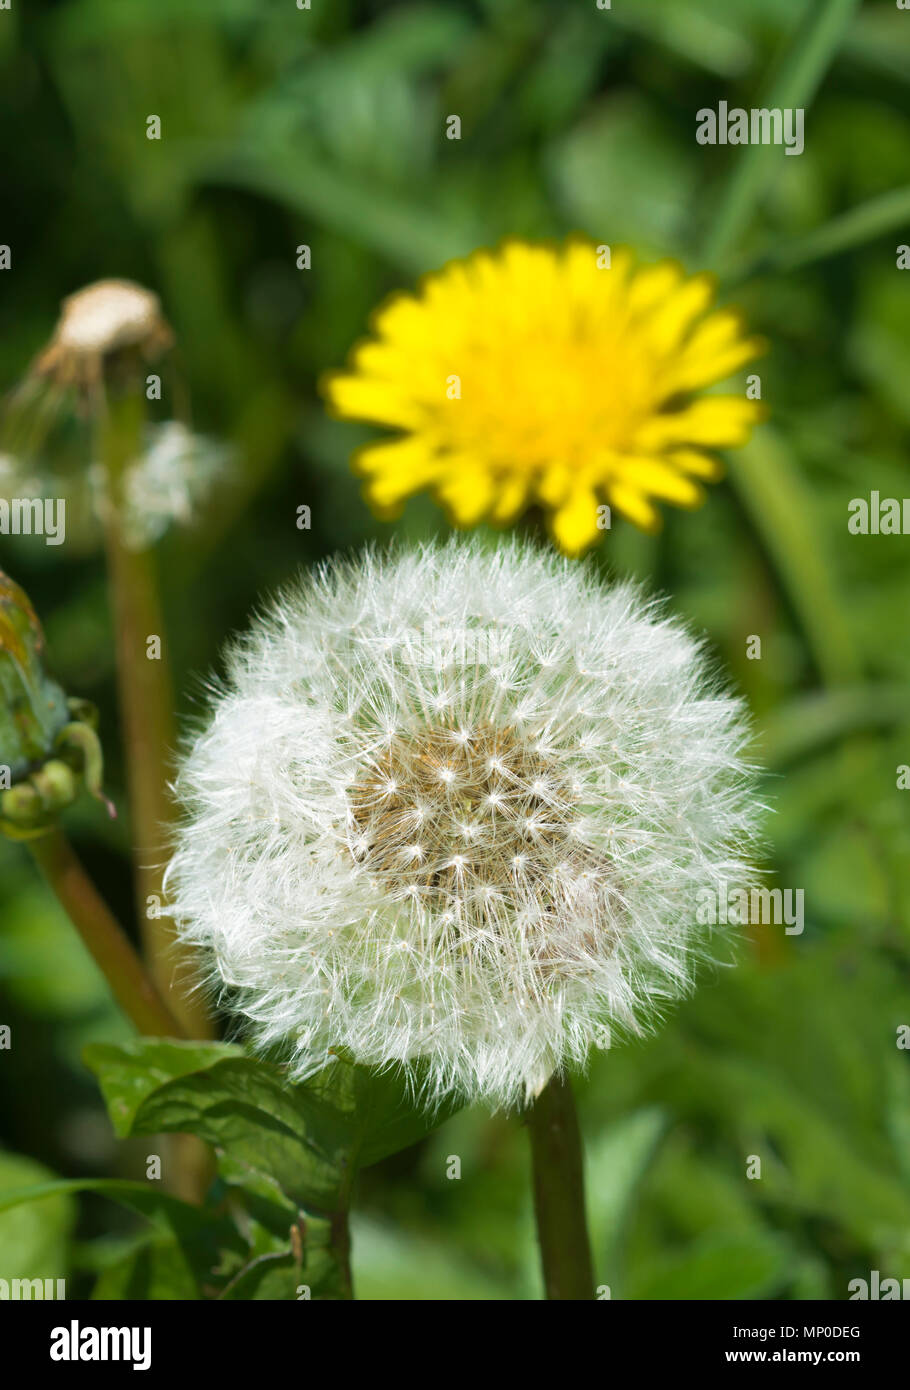 Nahaufnahme von einem weissen Samen Kopf oder "clock" von einer einzigen Löwenzahn (Taraxacum) Pflanze im Frühjahr in West Sussex, England, UK. Stockfoto